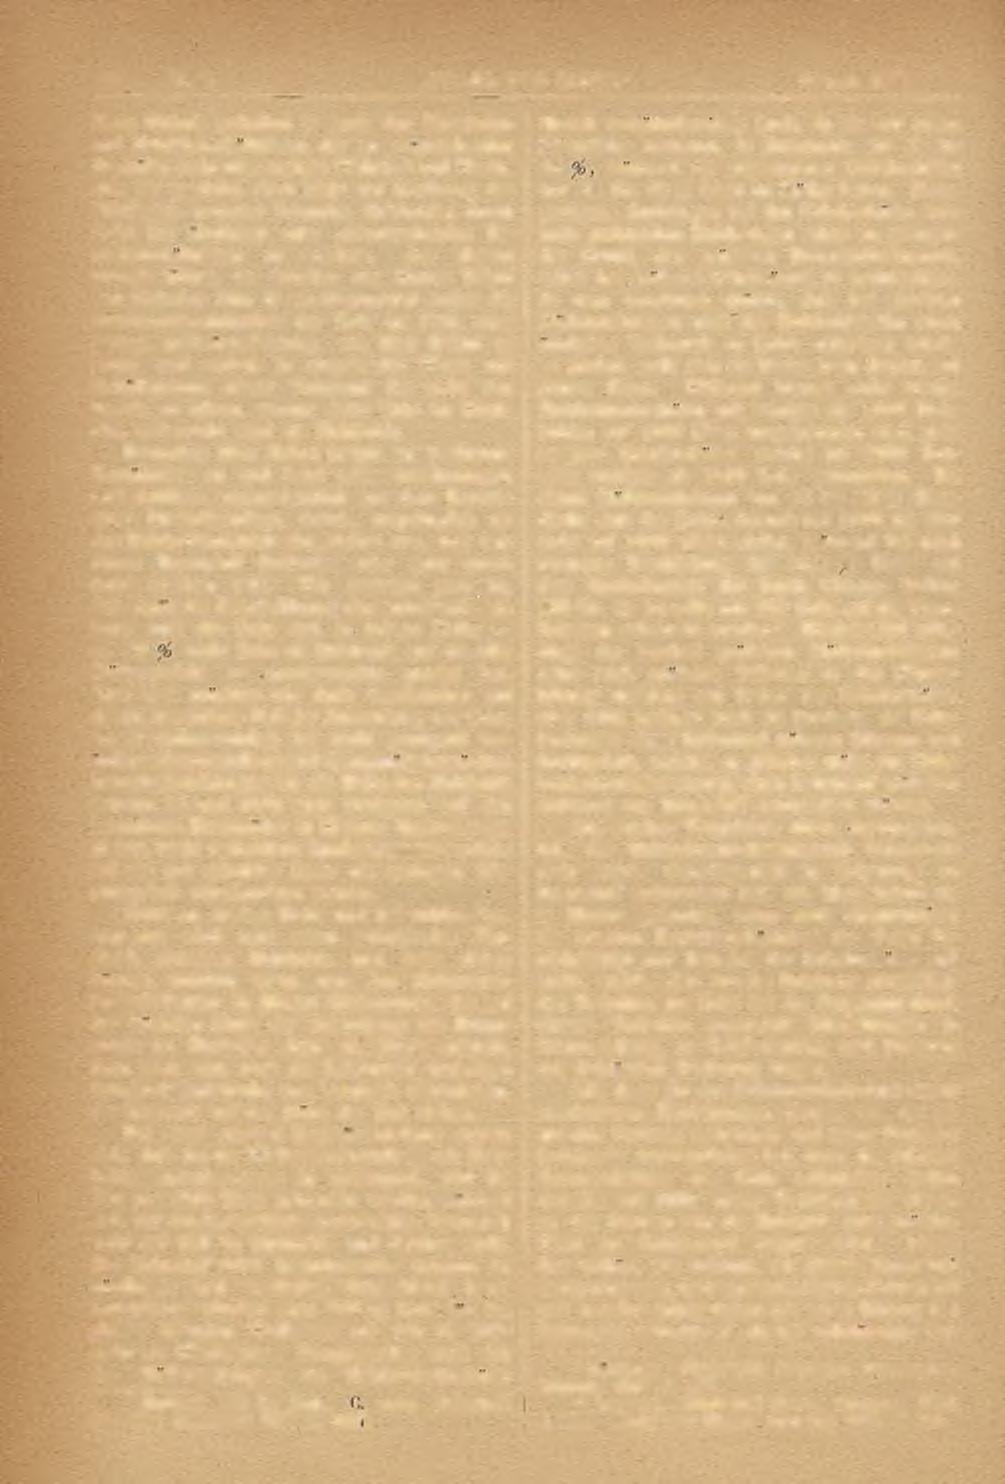 84 Nr. 2..STAHL UND EISEN." Februar 1886. Diese.